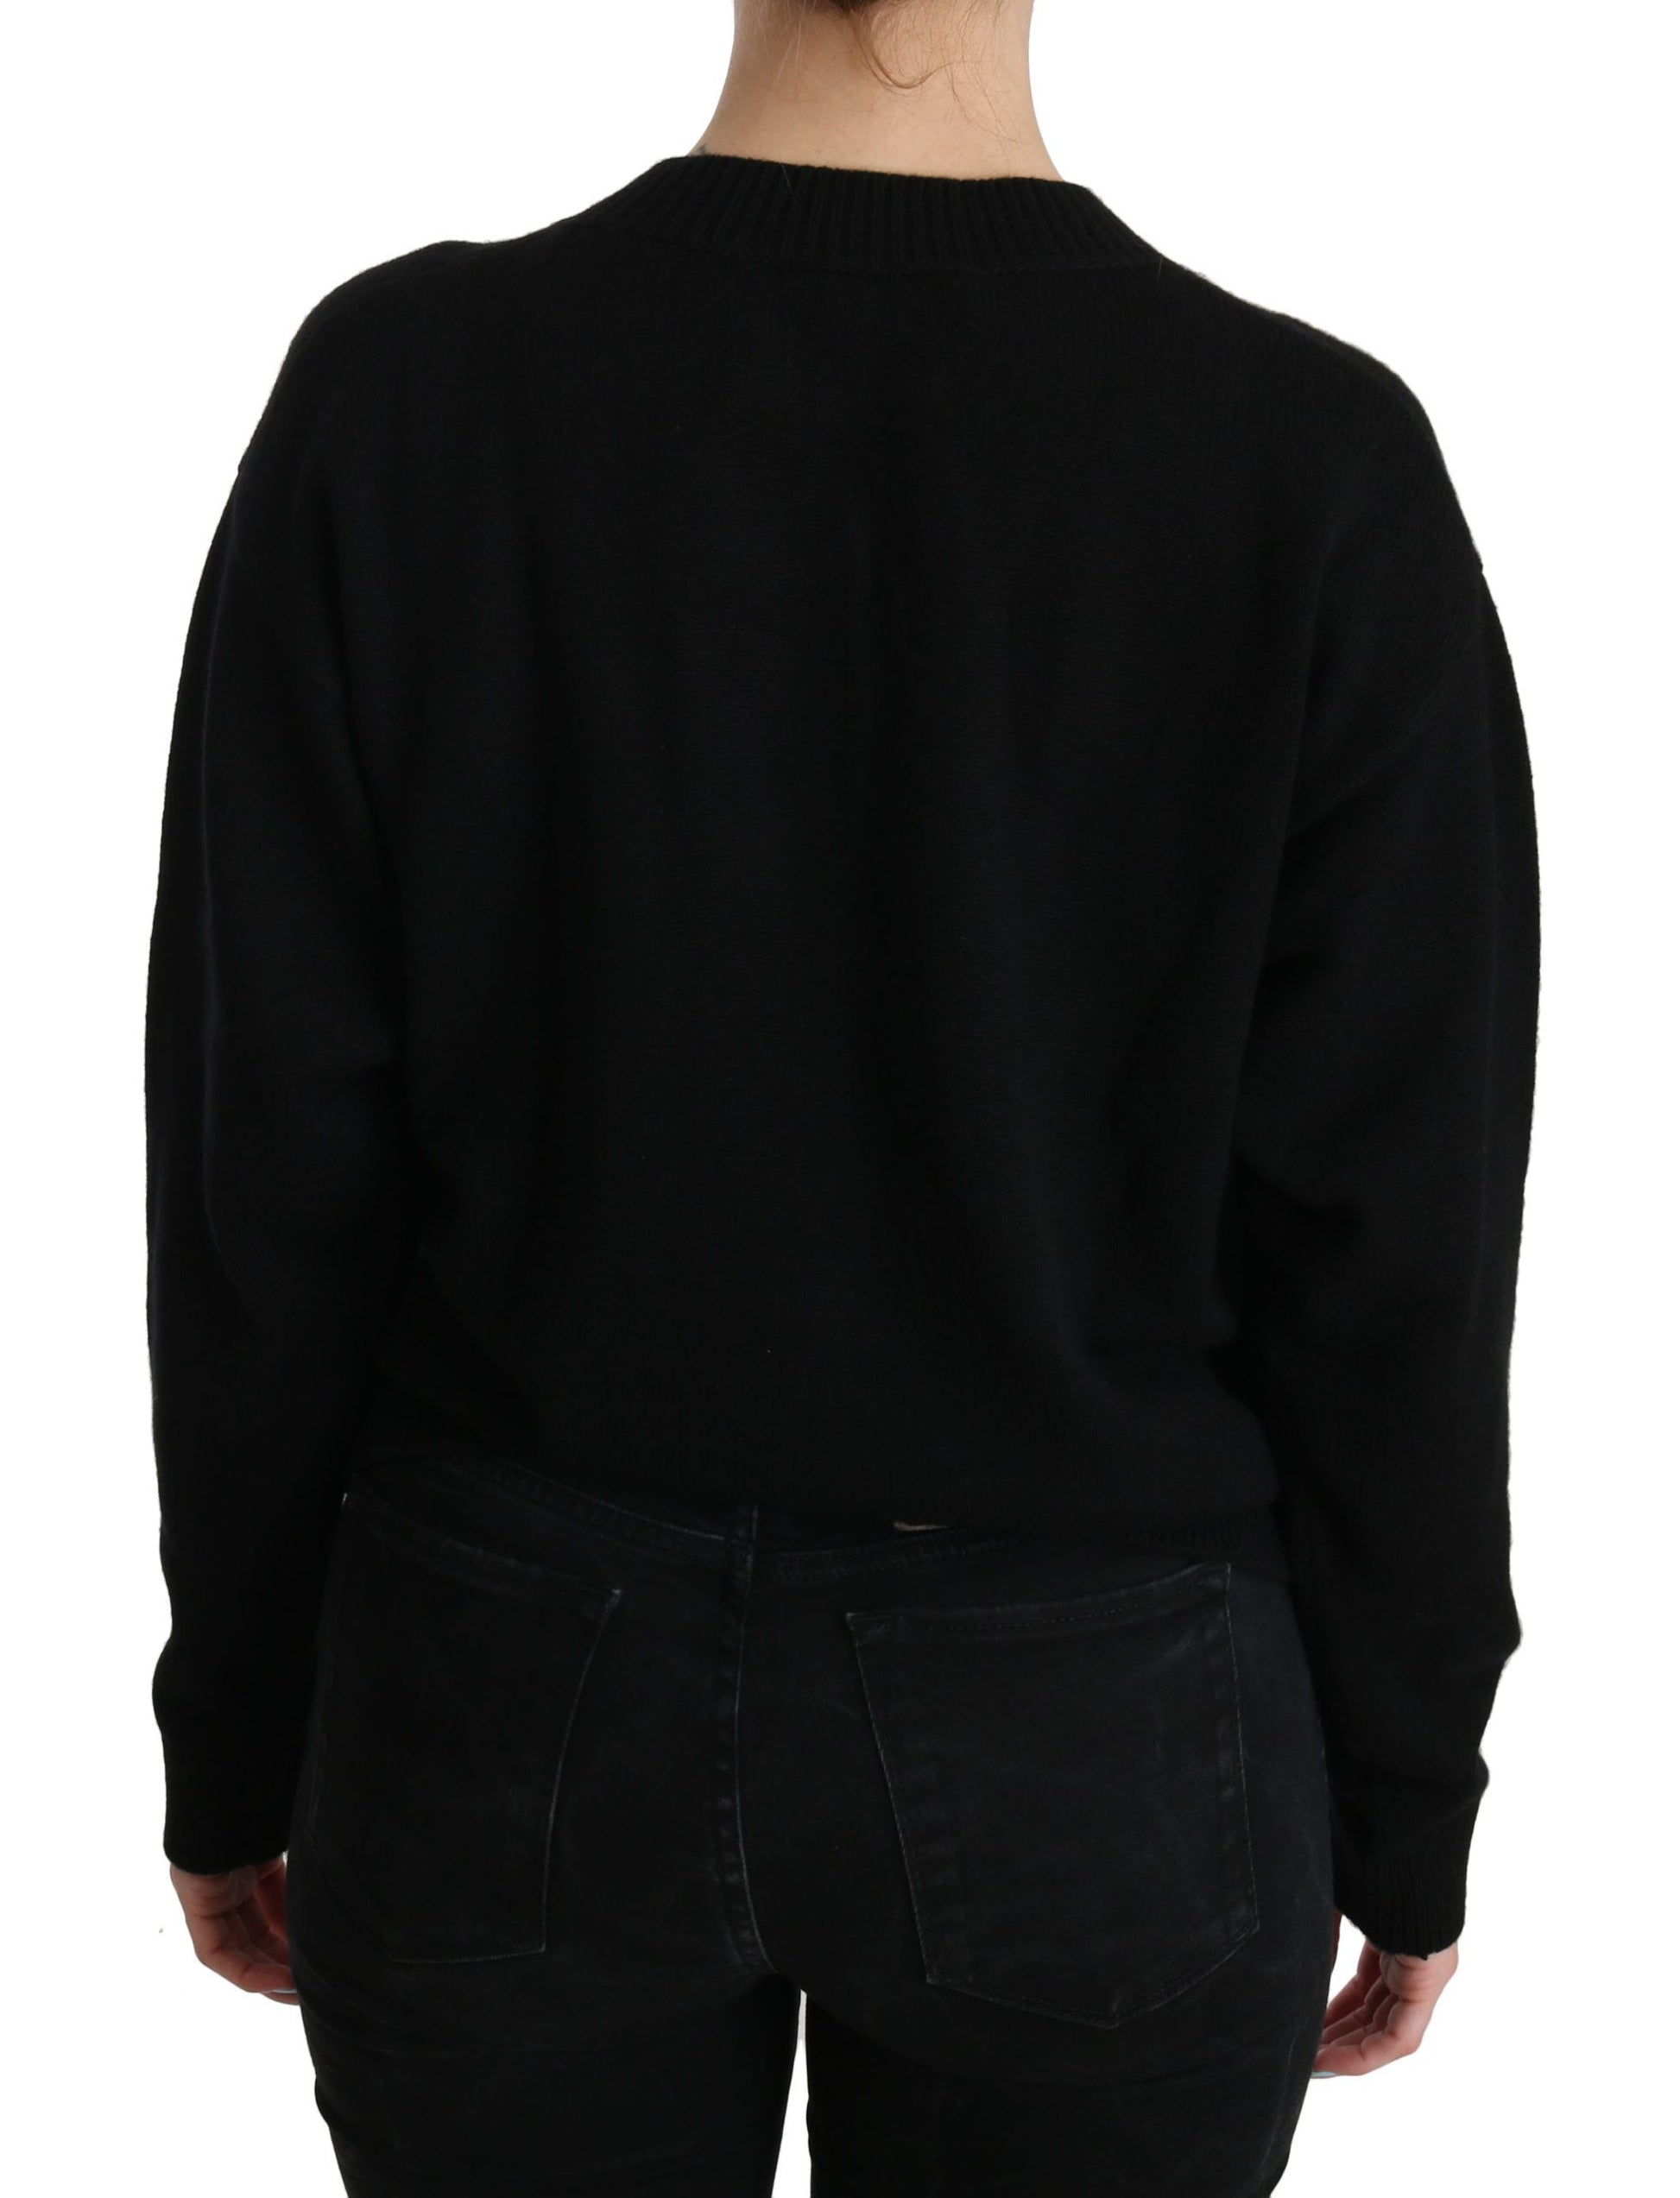 Elegant Black Cashmere Cardigan Top